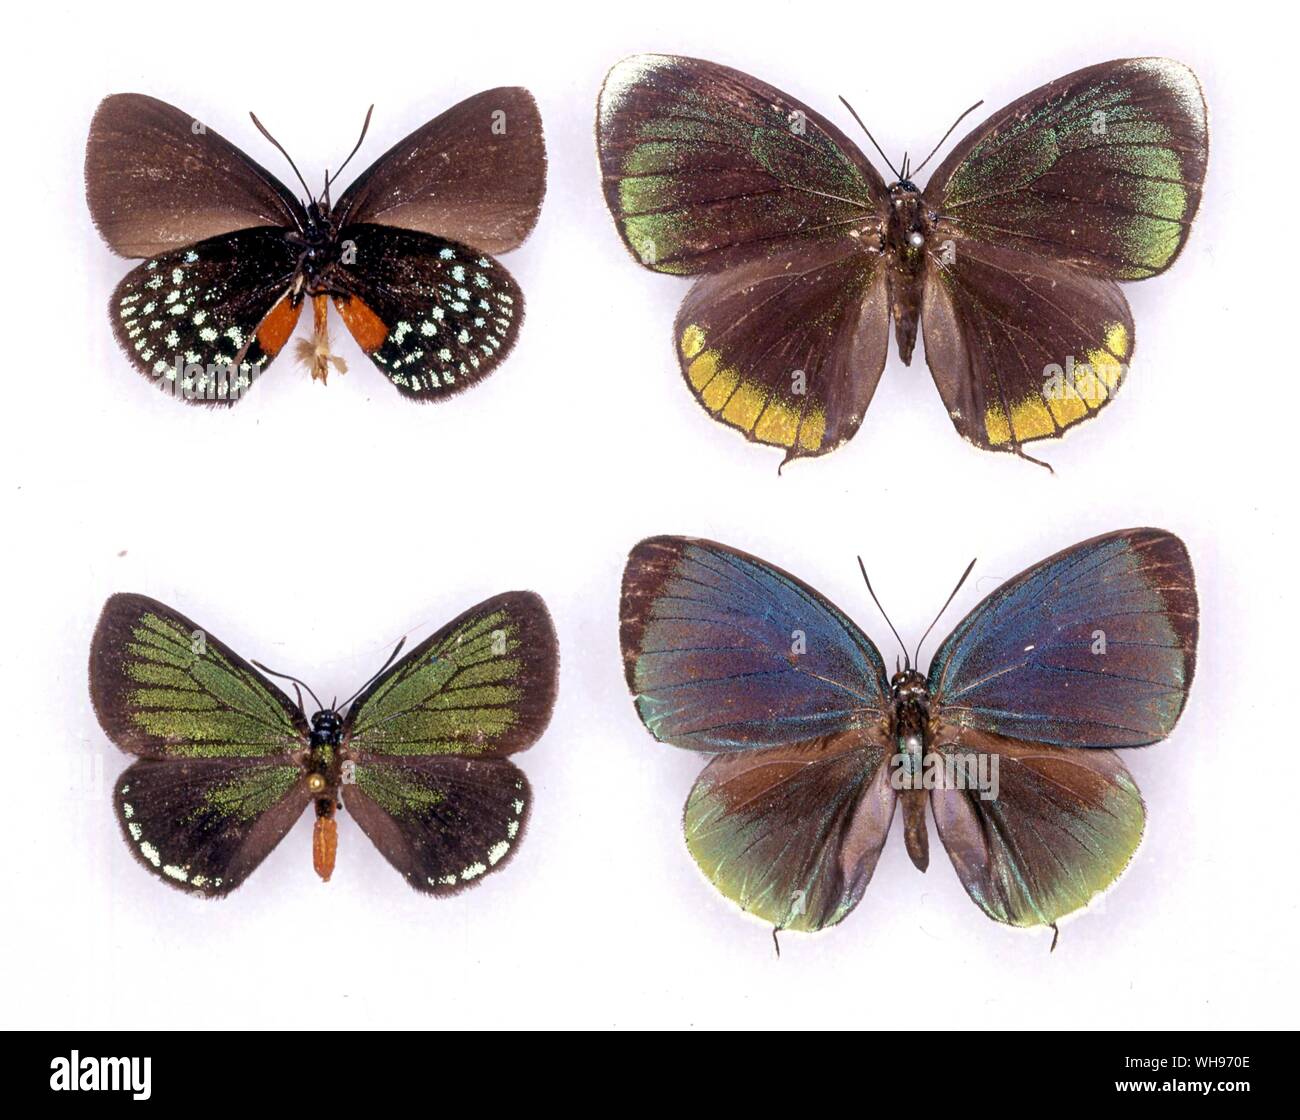 Papillons papillons/- (de gauche à droite) Bettongia atala (dessous de l'homme), Theorema eumenia (femelle), Bettongia atala (mâle), Theorema eumenia (mâle) Banque D'Images